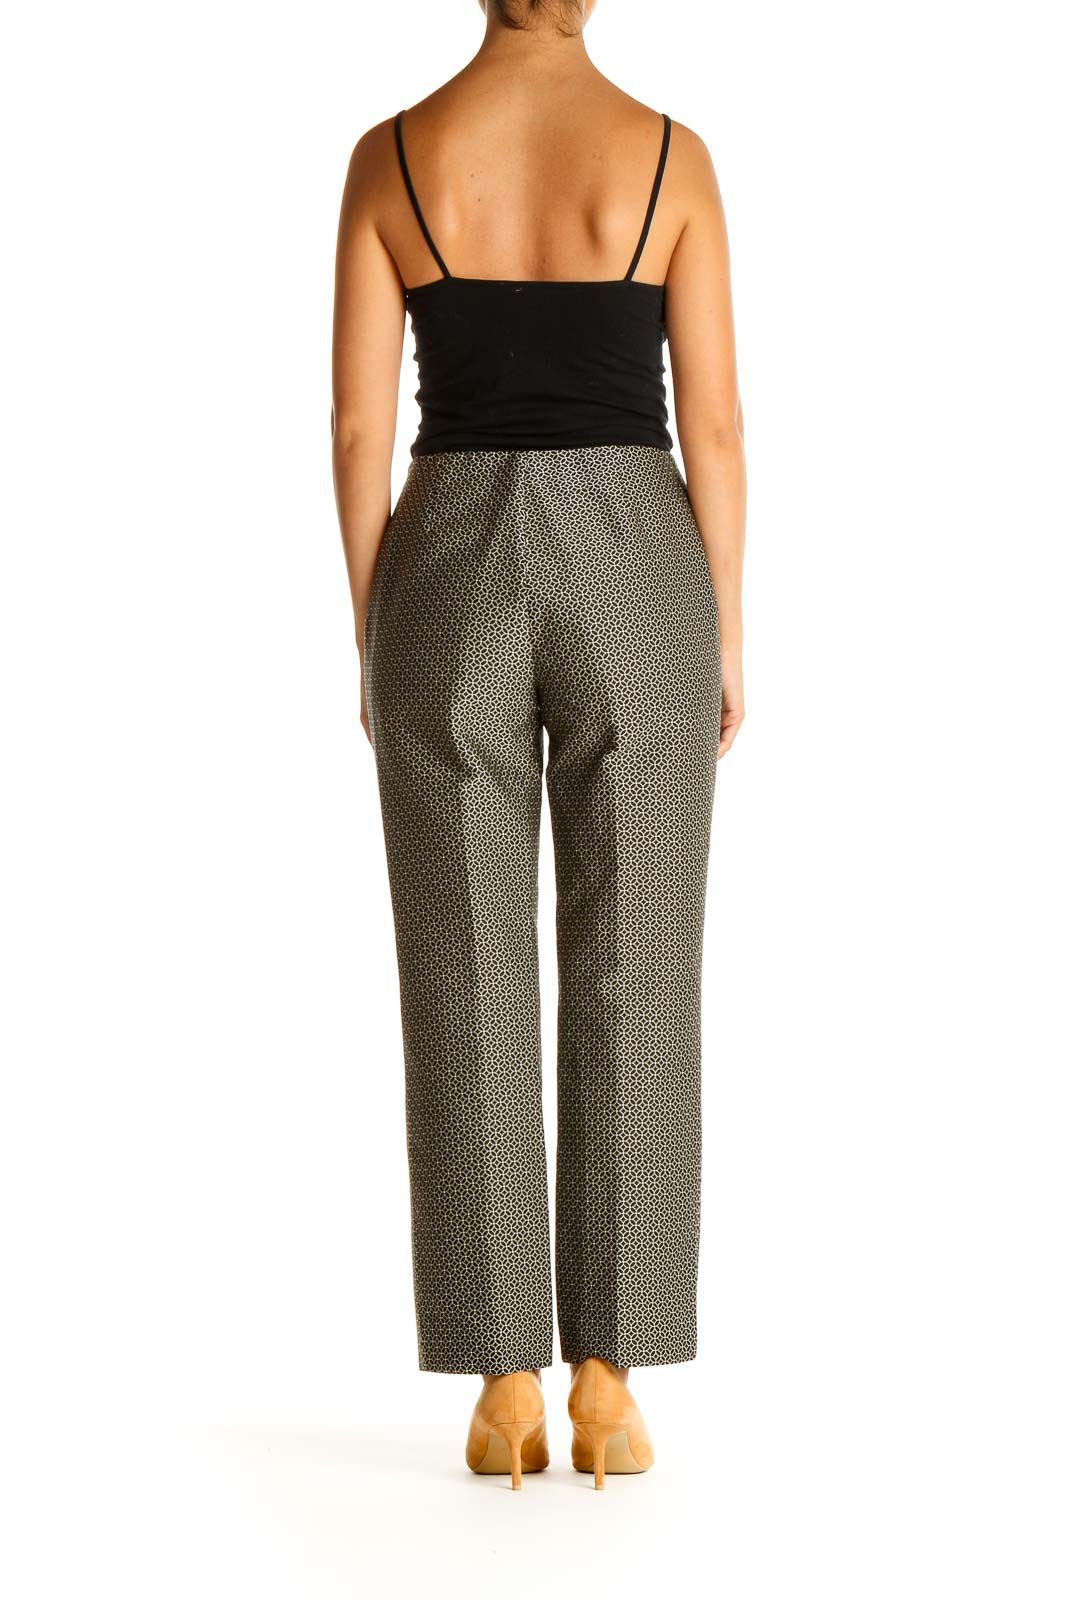 Olsen Women's Pants & Trousers - Macy's